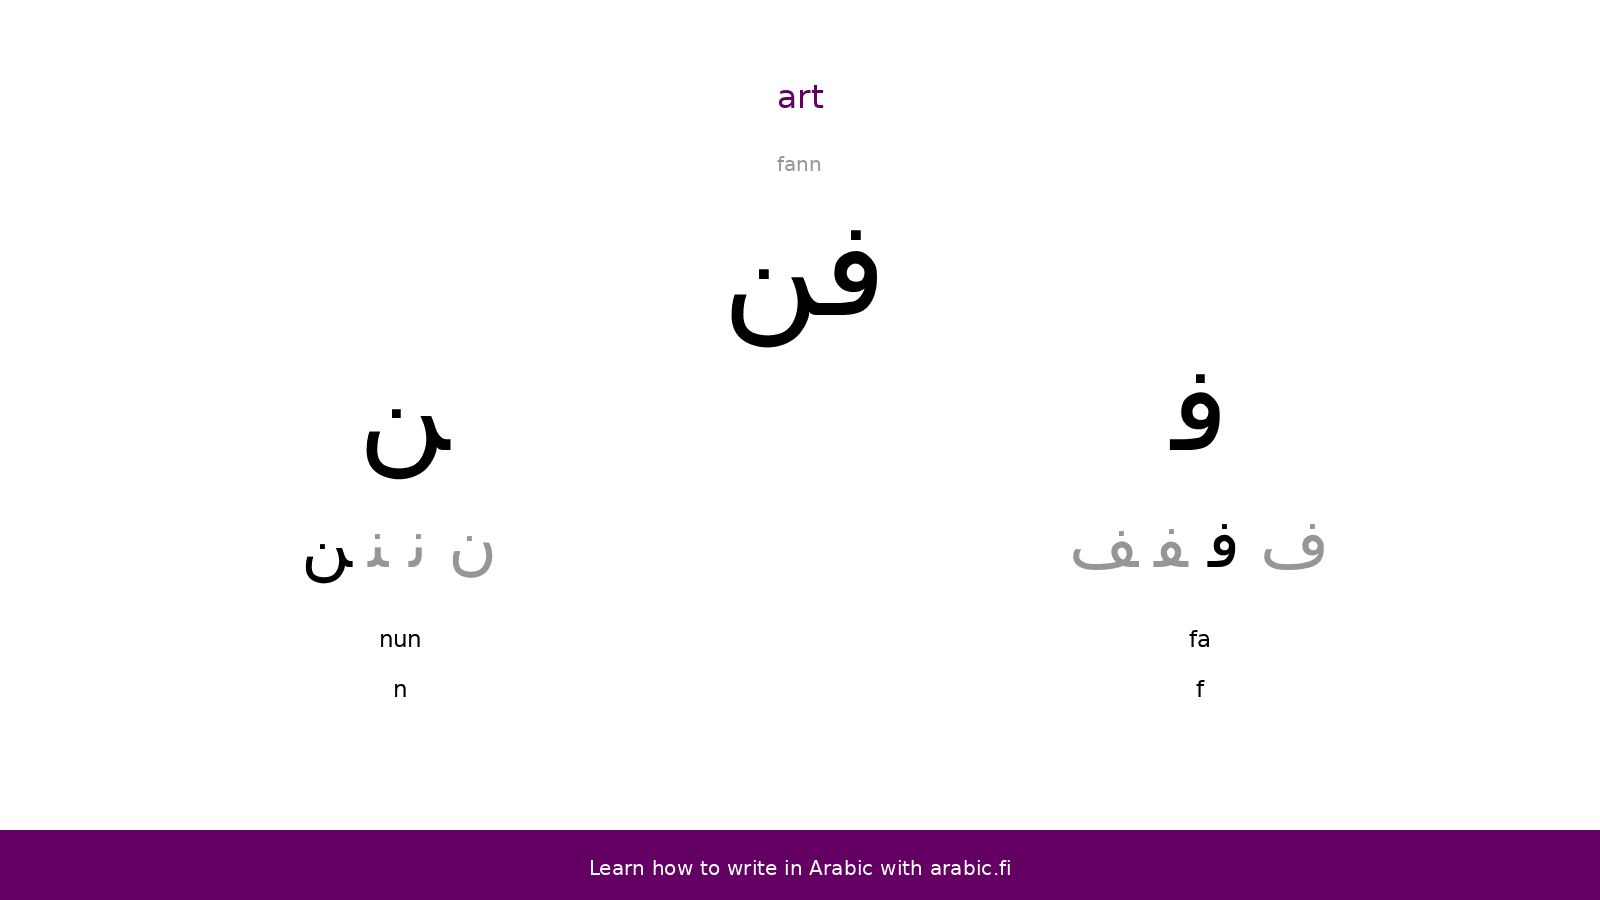 Art – an Arabic word